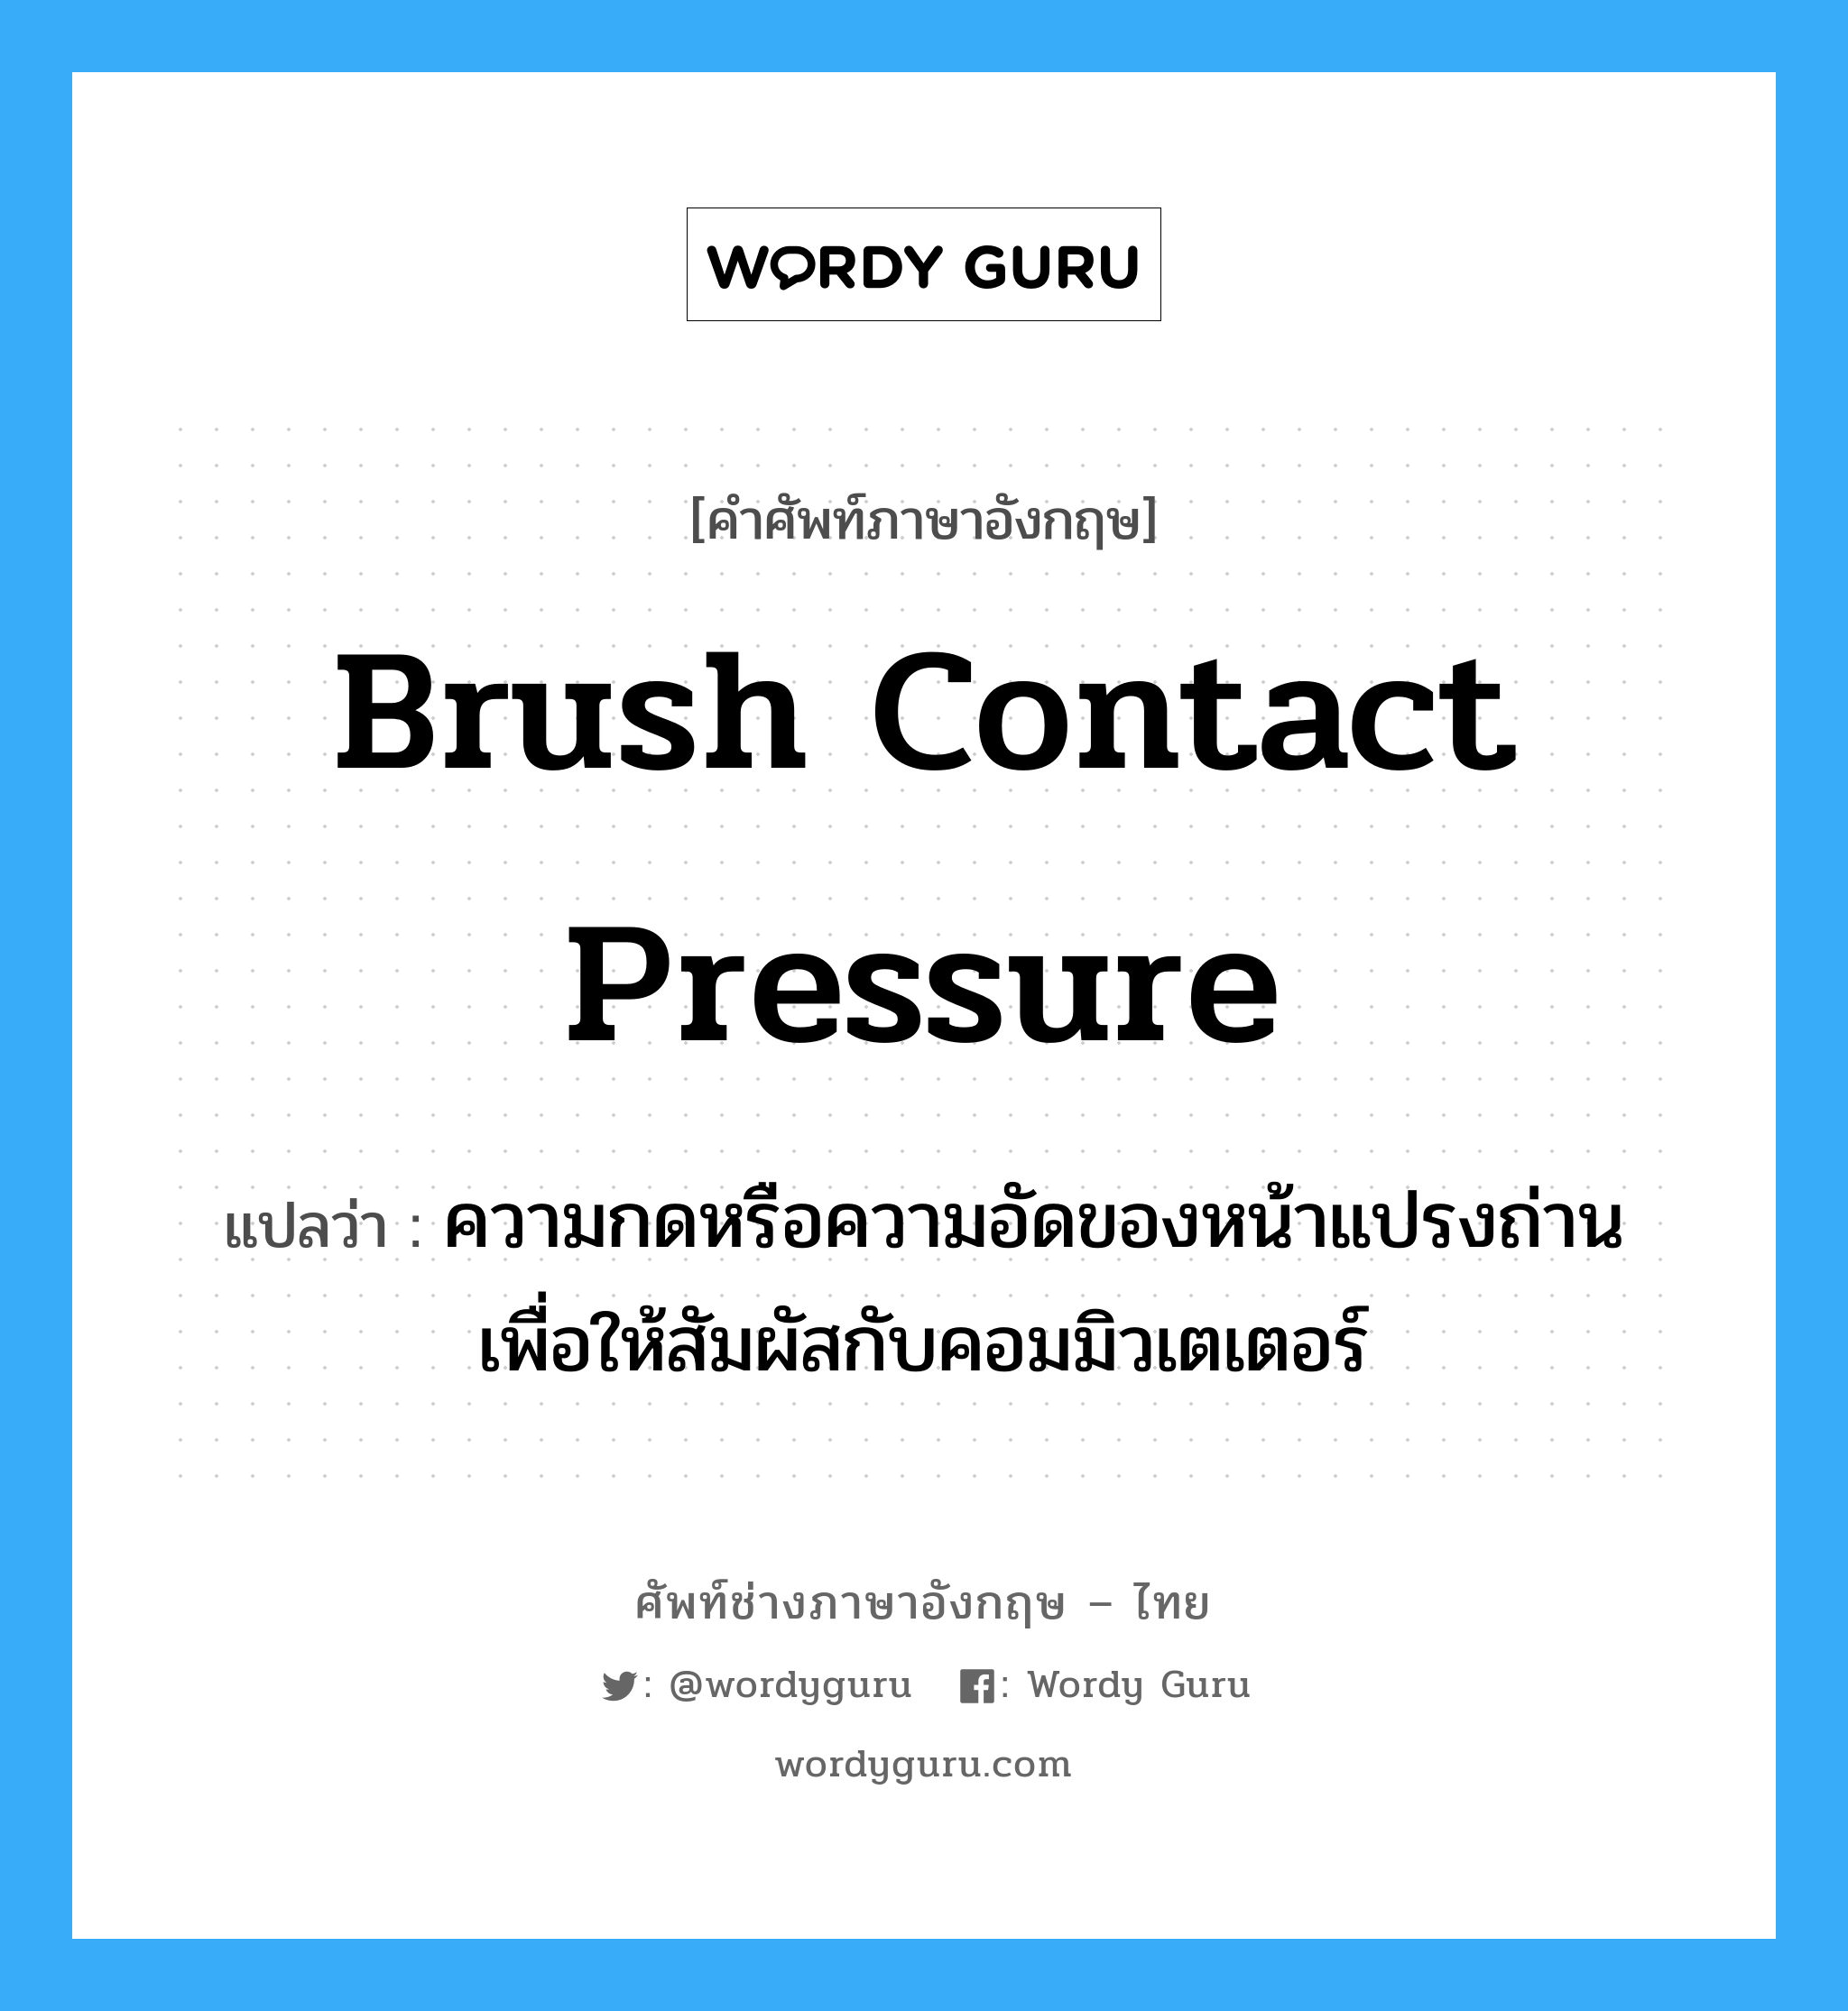 brush contact pressure แปลว่า?, คำศัพท์ช่างภาษาอังกฤษ - ไทย brush contact pressure คำศัพท์ภาษาอังกฤษ brush contact pressure แปลว่า ความกดหรือความอัดของหน้าแปรงถ่าน เพื่อให้สัมผัสกับคอมมิวเตเตอร์